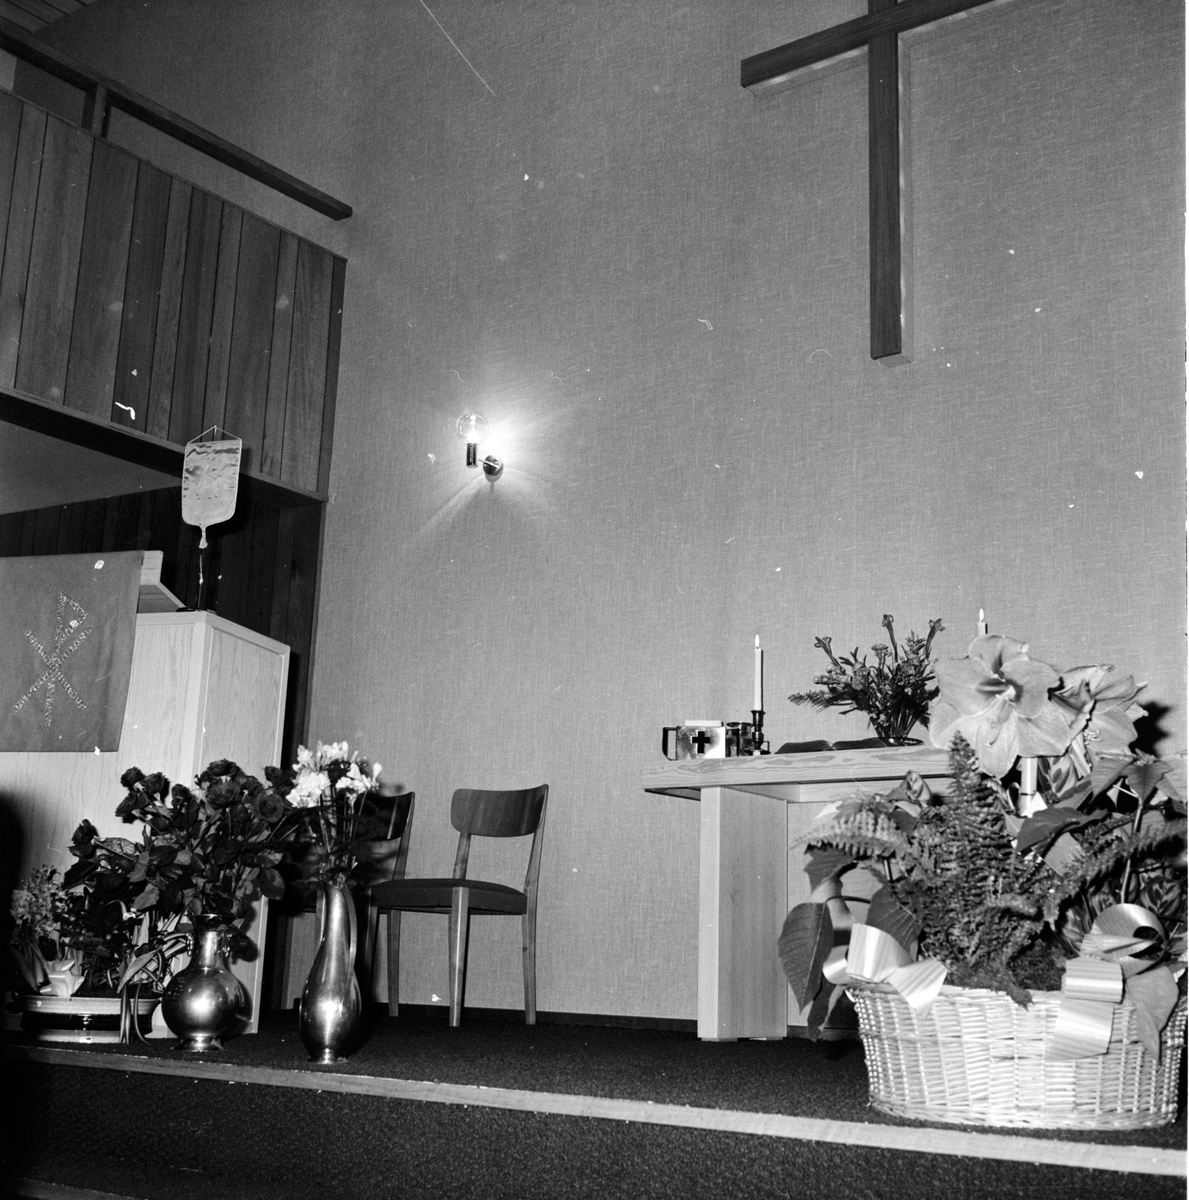 Arbrå,
Baptistkyrkan,
Invigning,
December 1971